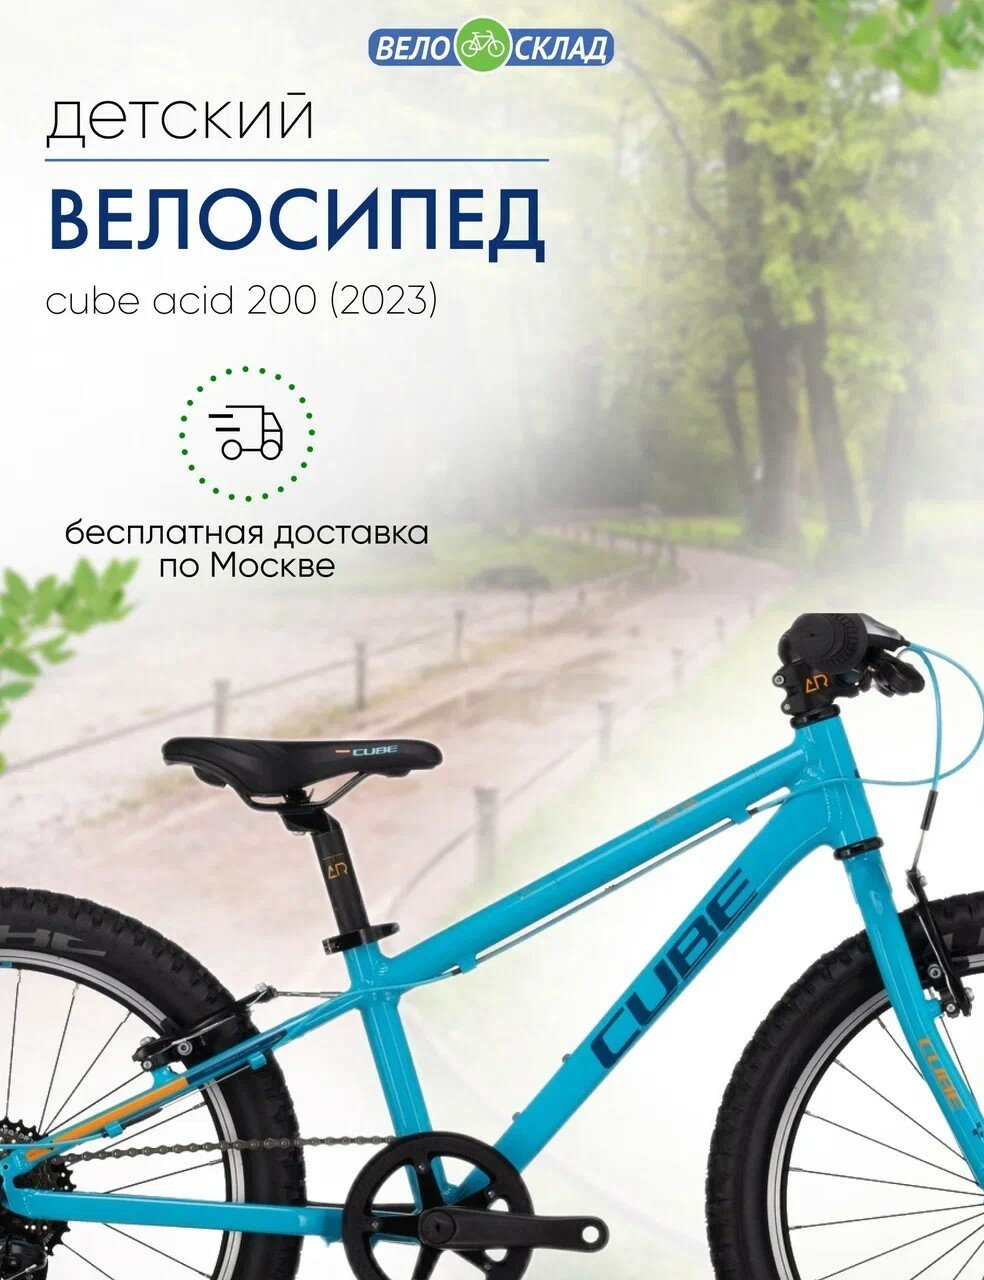 Детский велосипед Cube Acid 200, год 2023, цвет Синий-Оранжевый